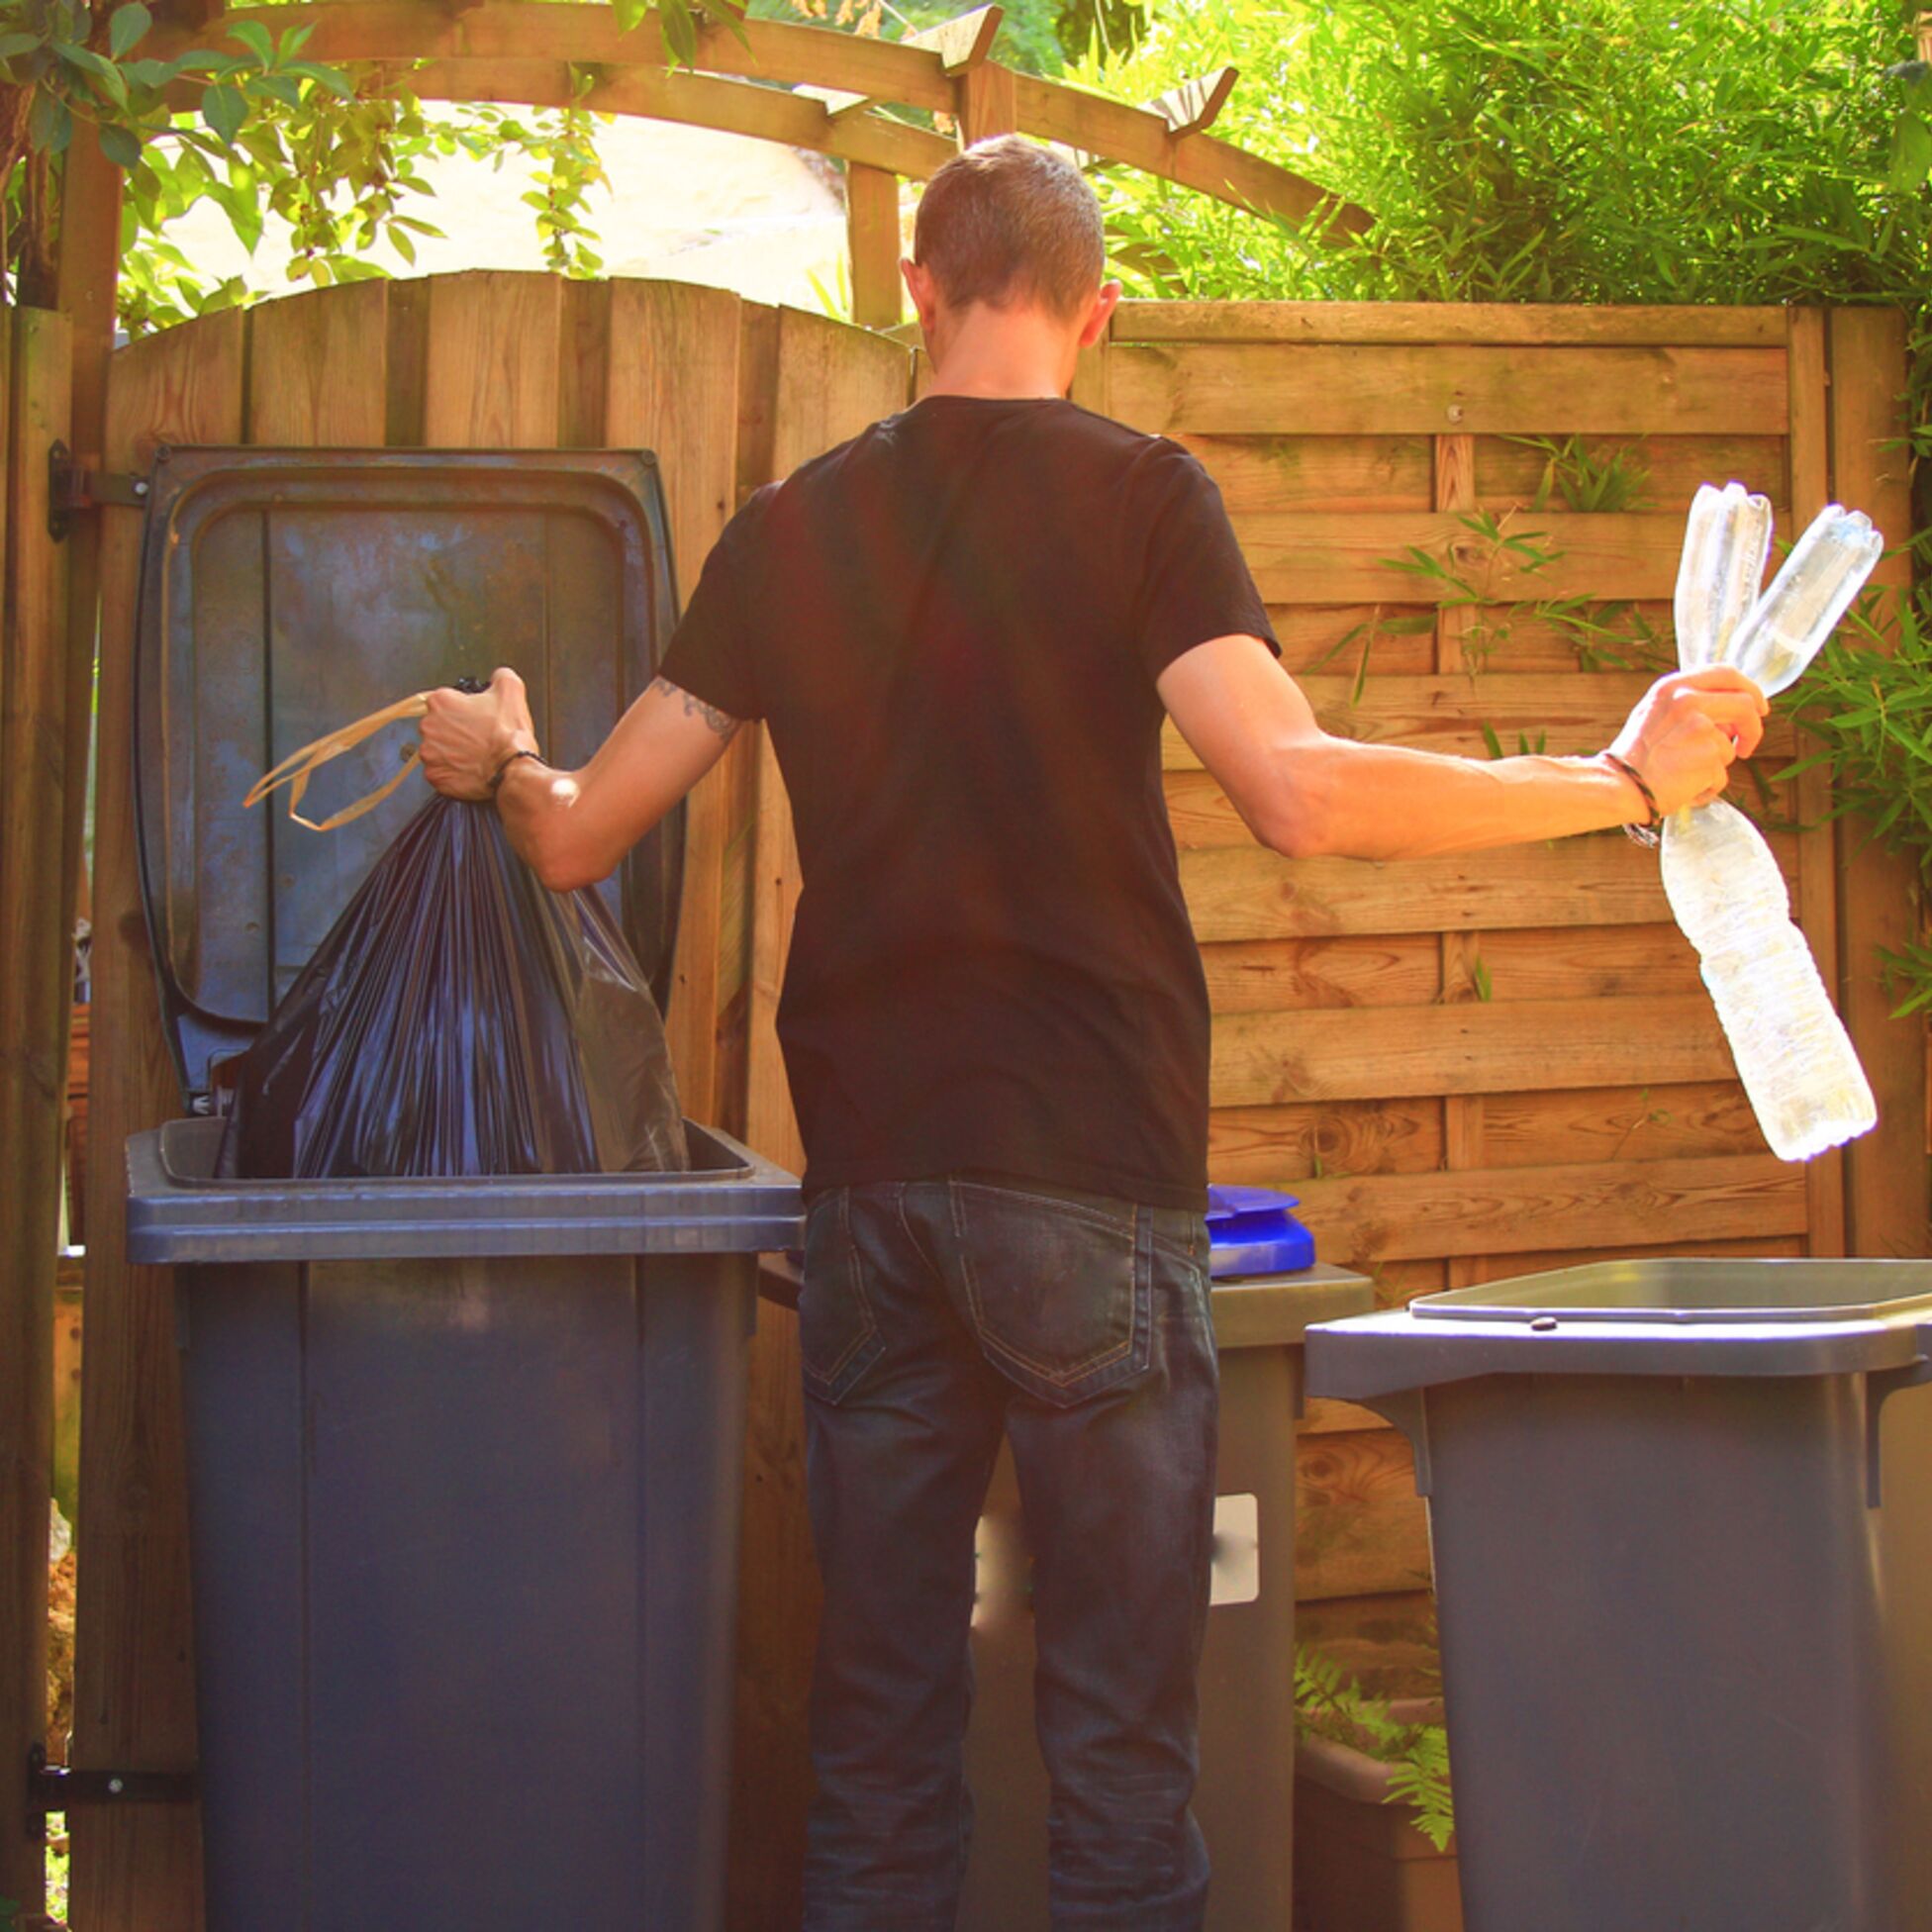 Mann sortiert Müll in Tonnen